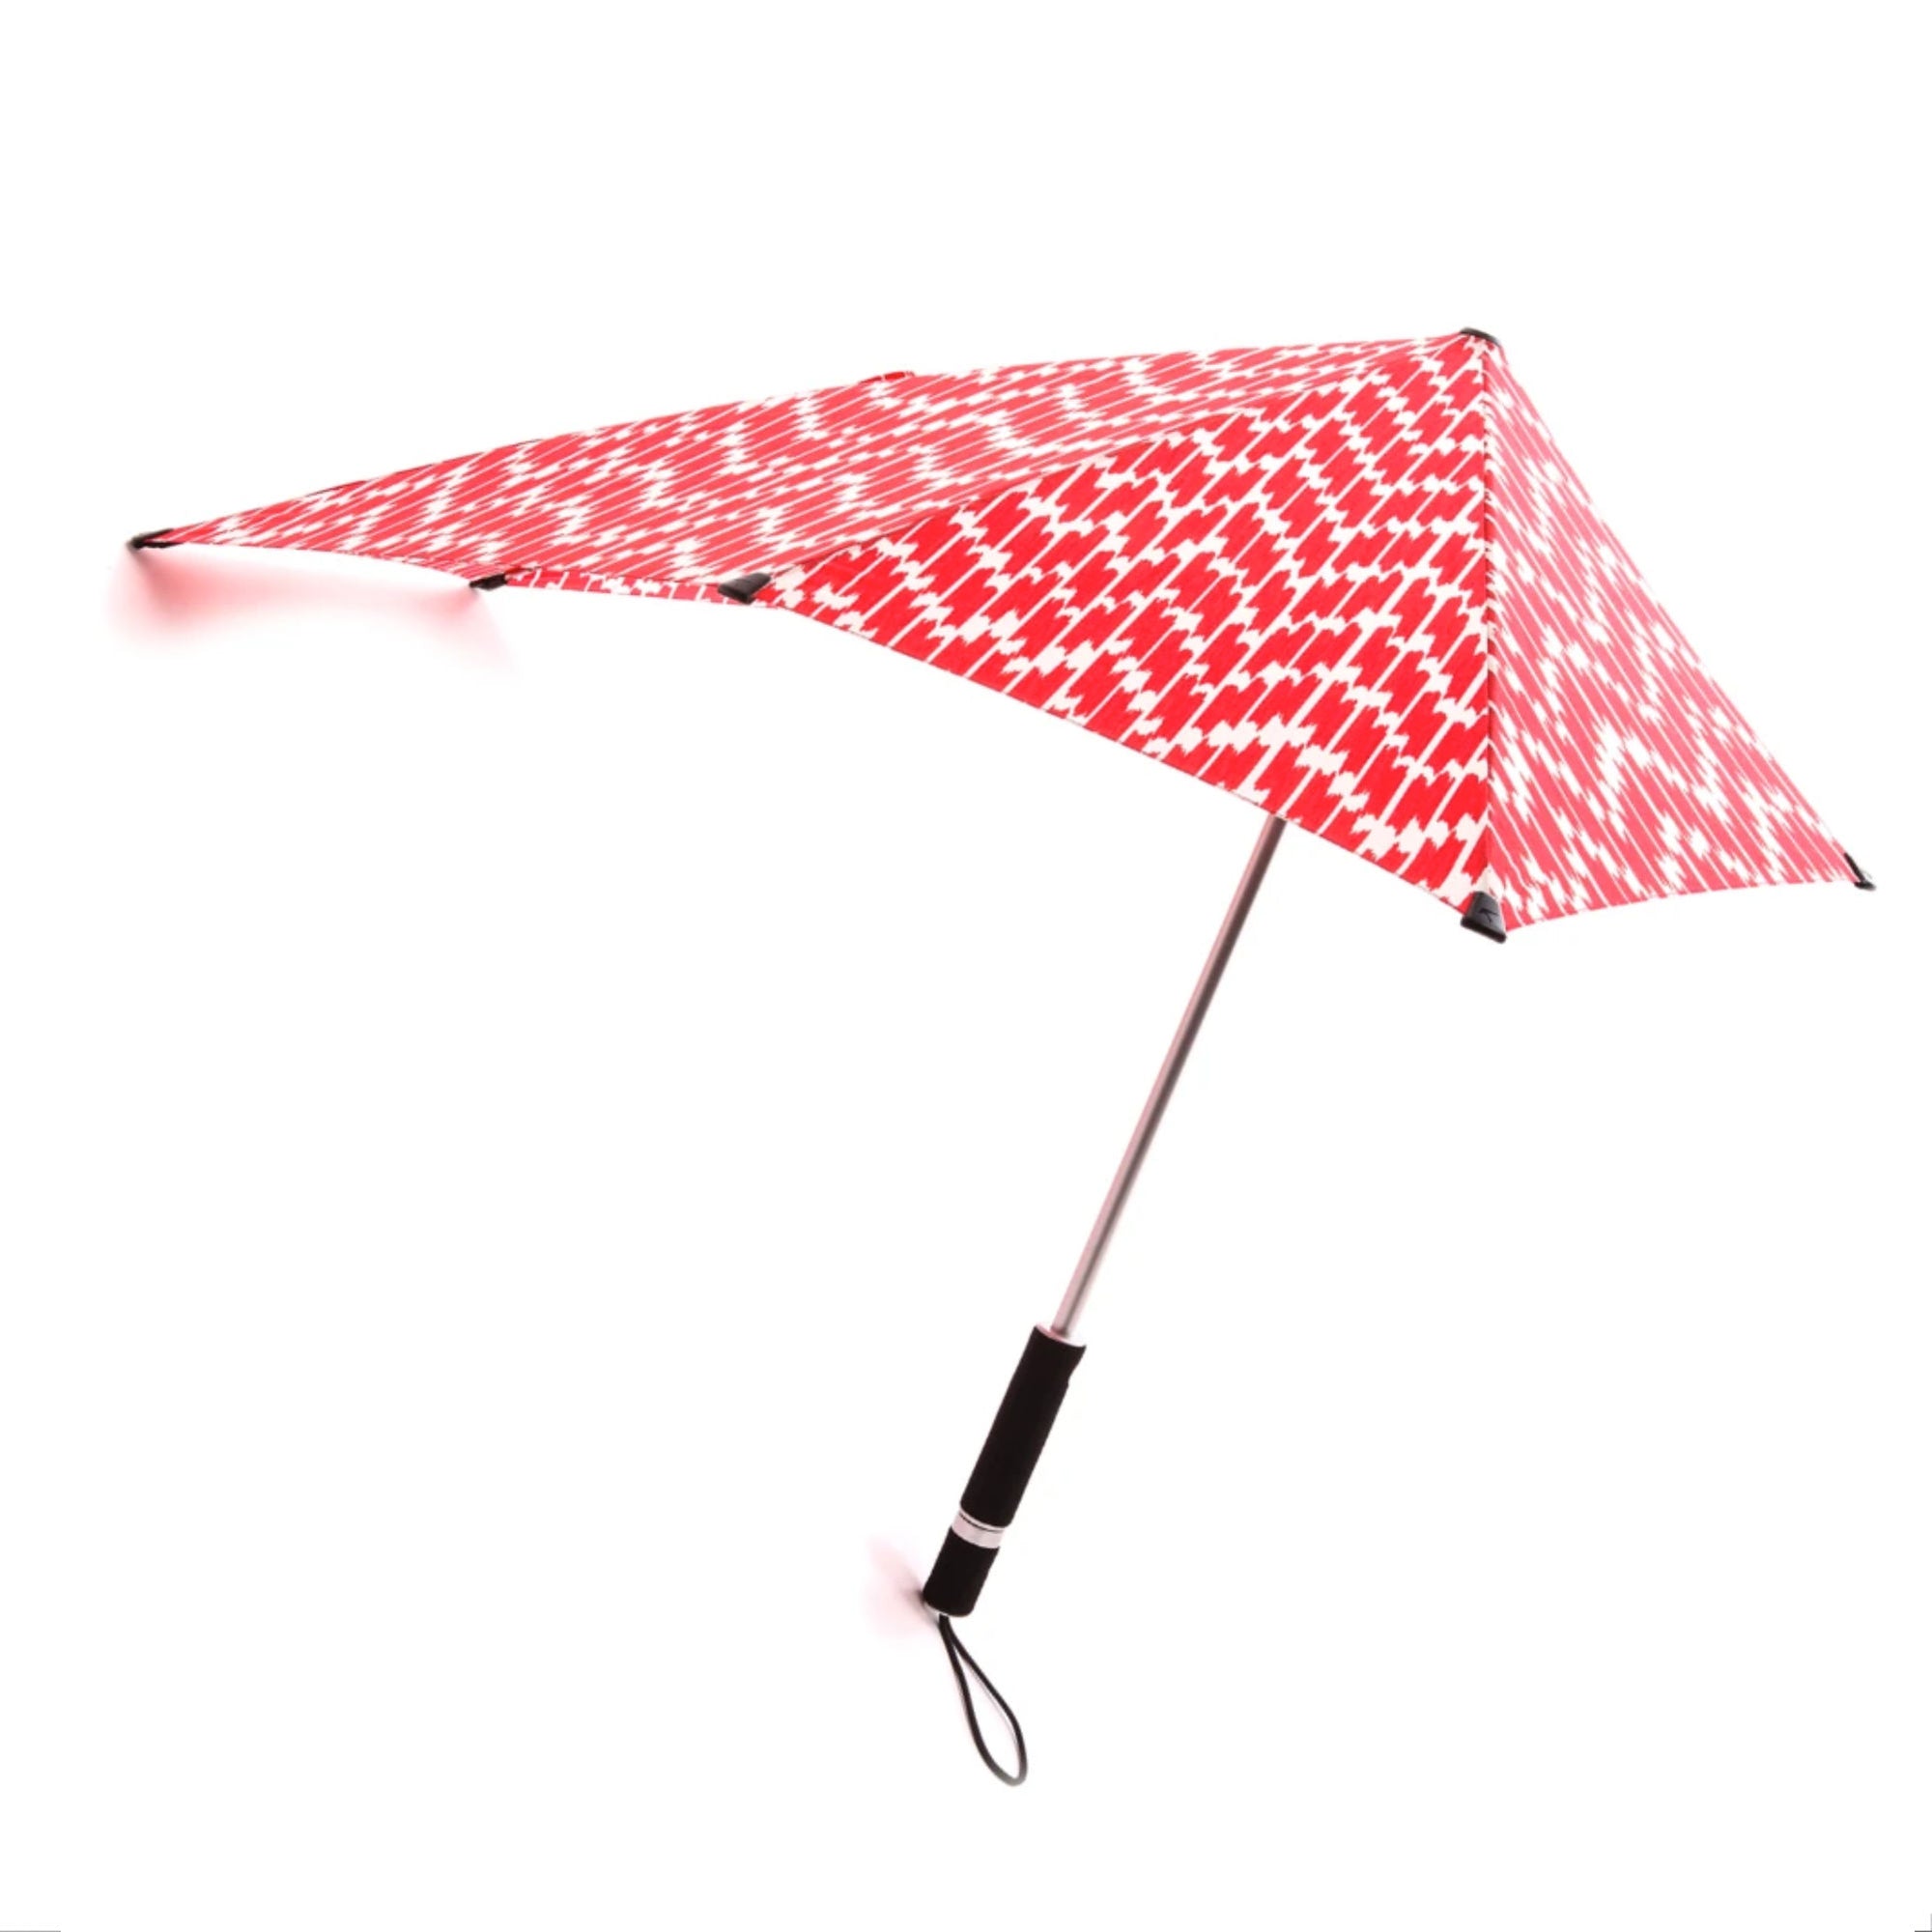 Senz° Original storm umbrella, ikat red